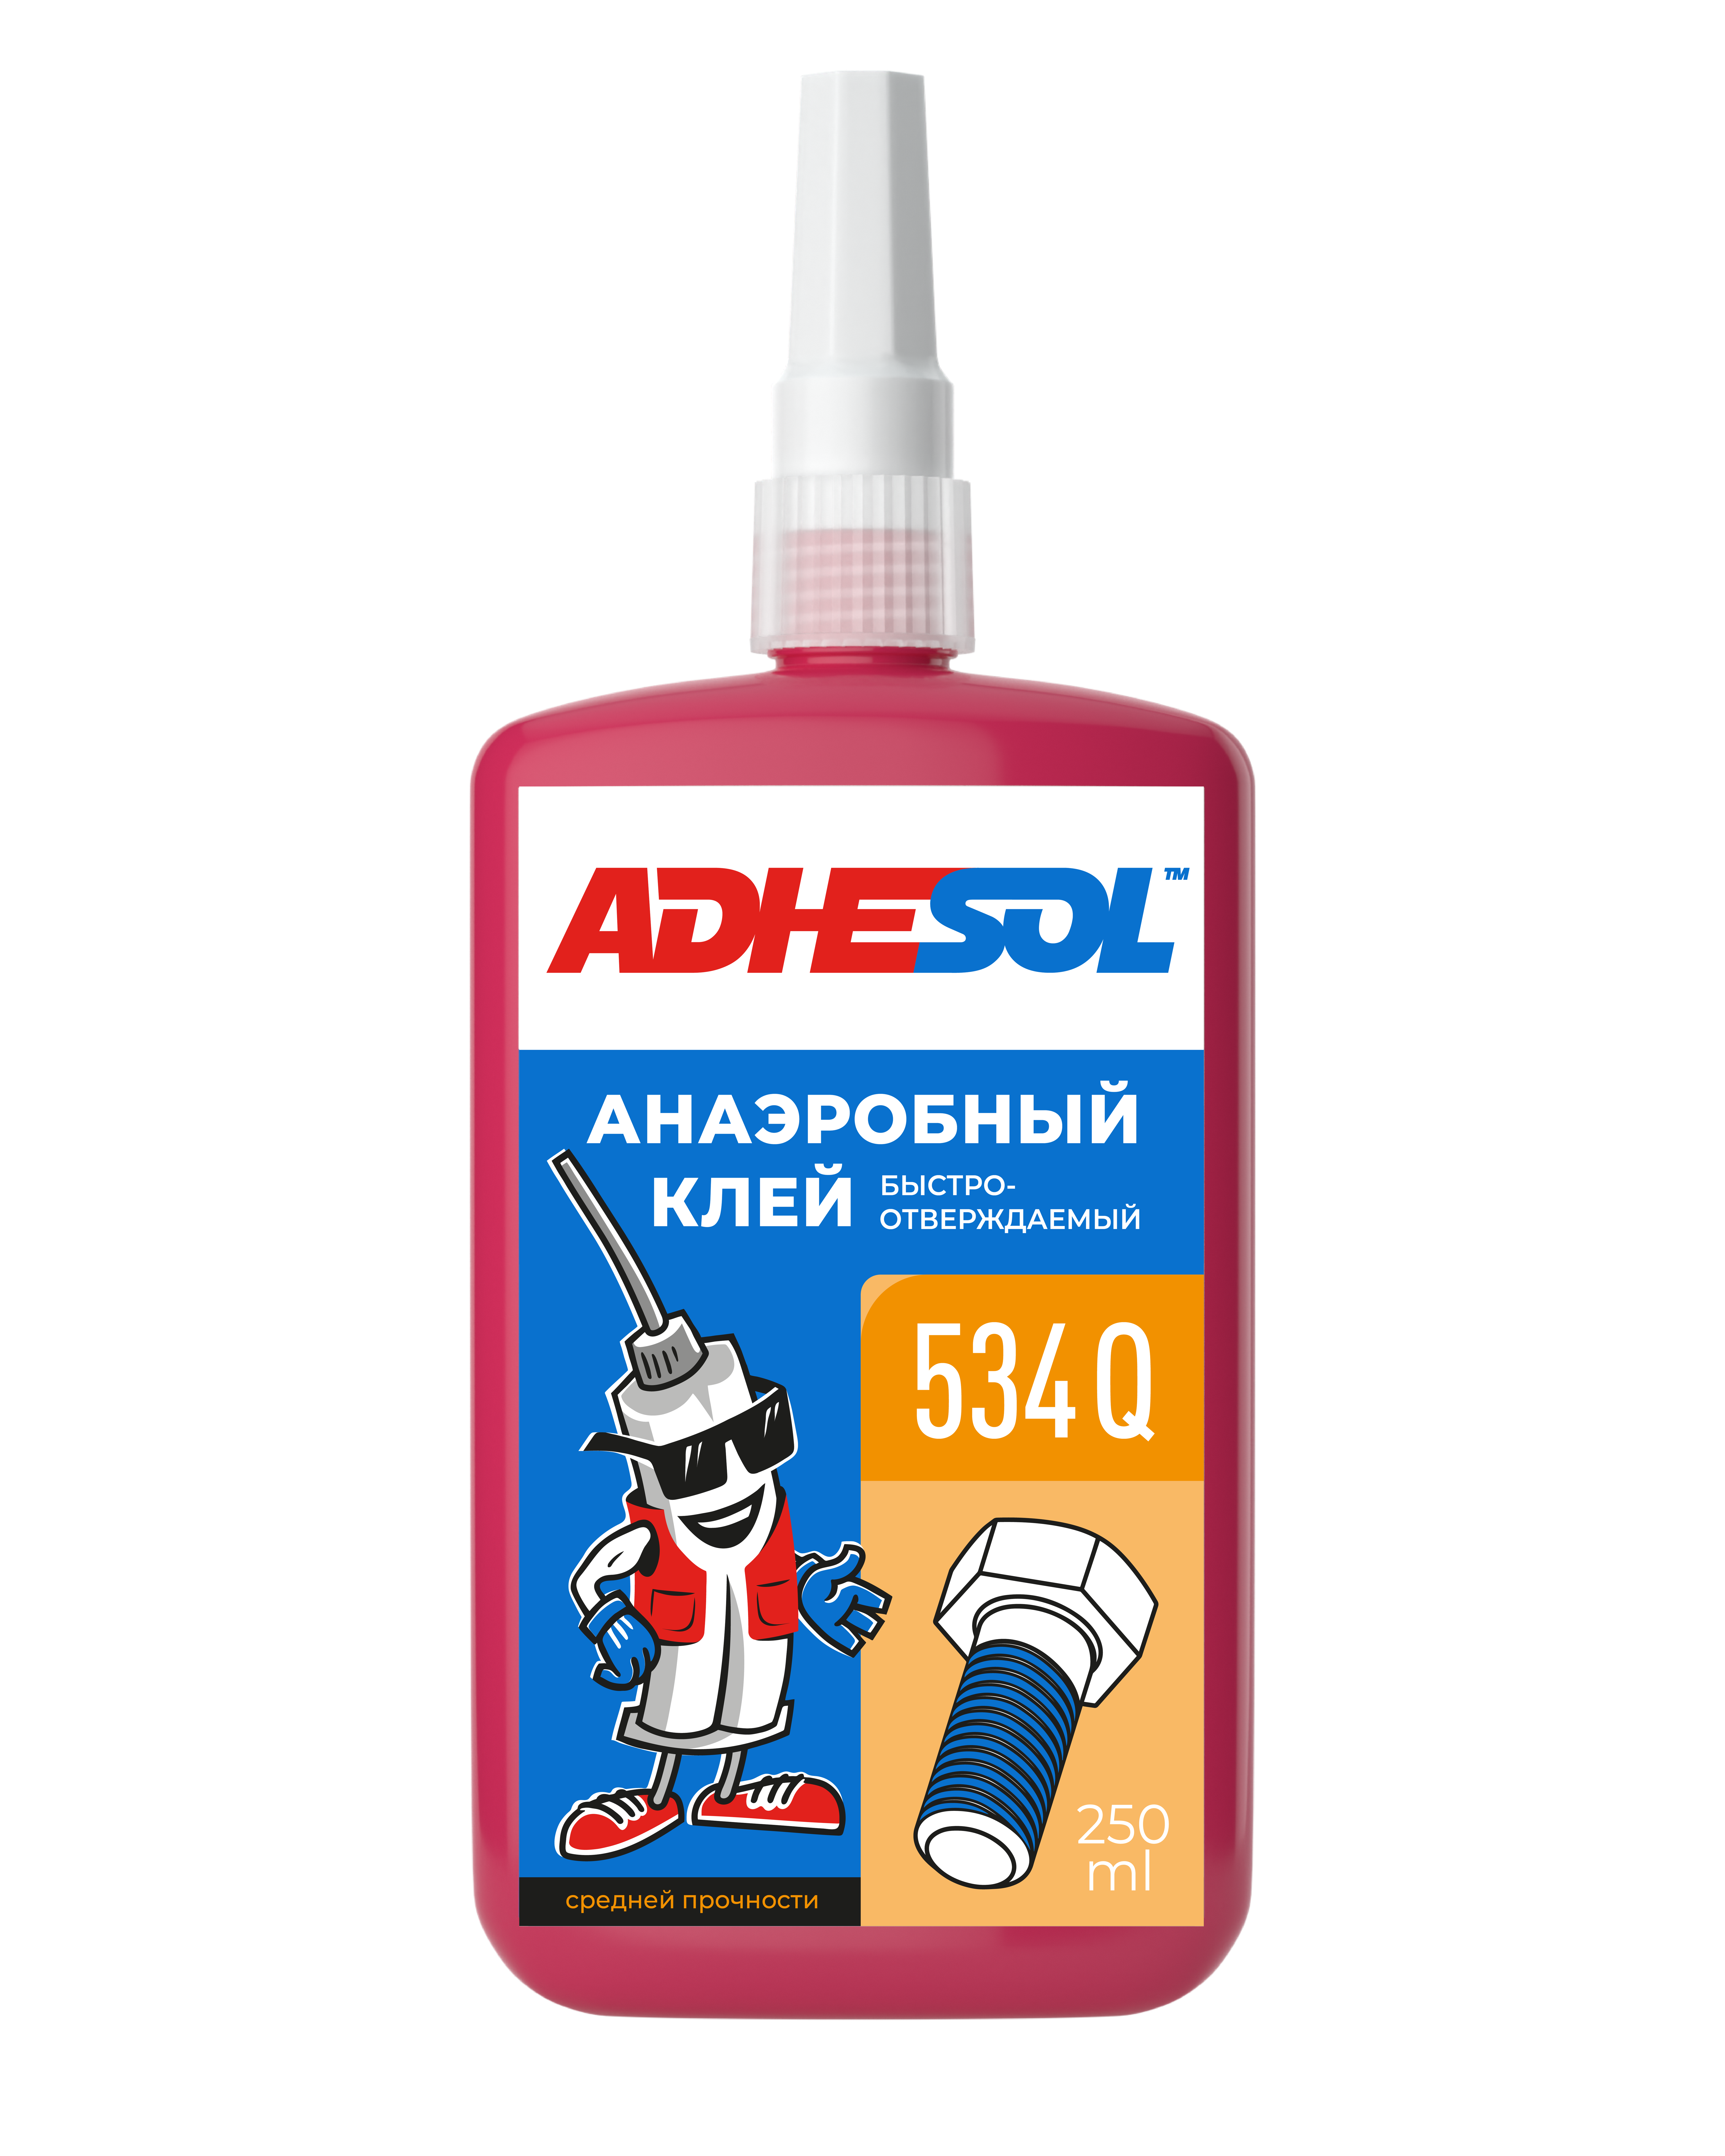 Анаэробный клей средней  прочности для резьбовых соединений ADHESOL 534Q 250ml